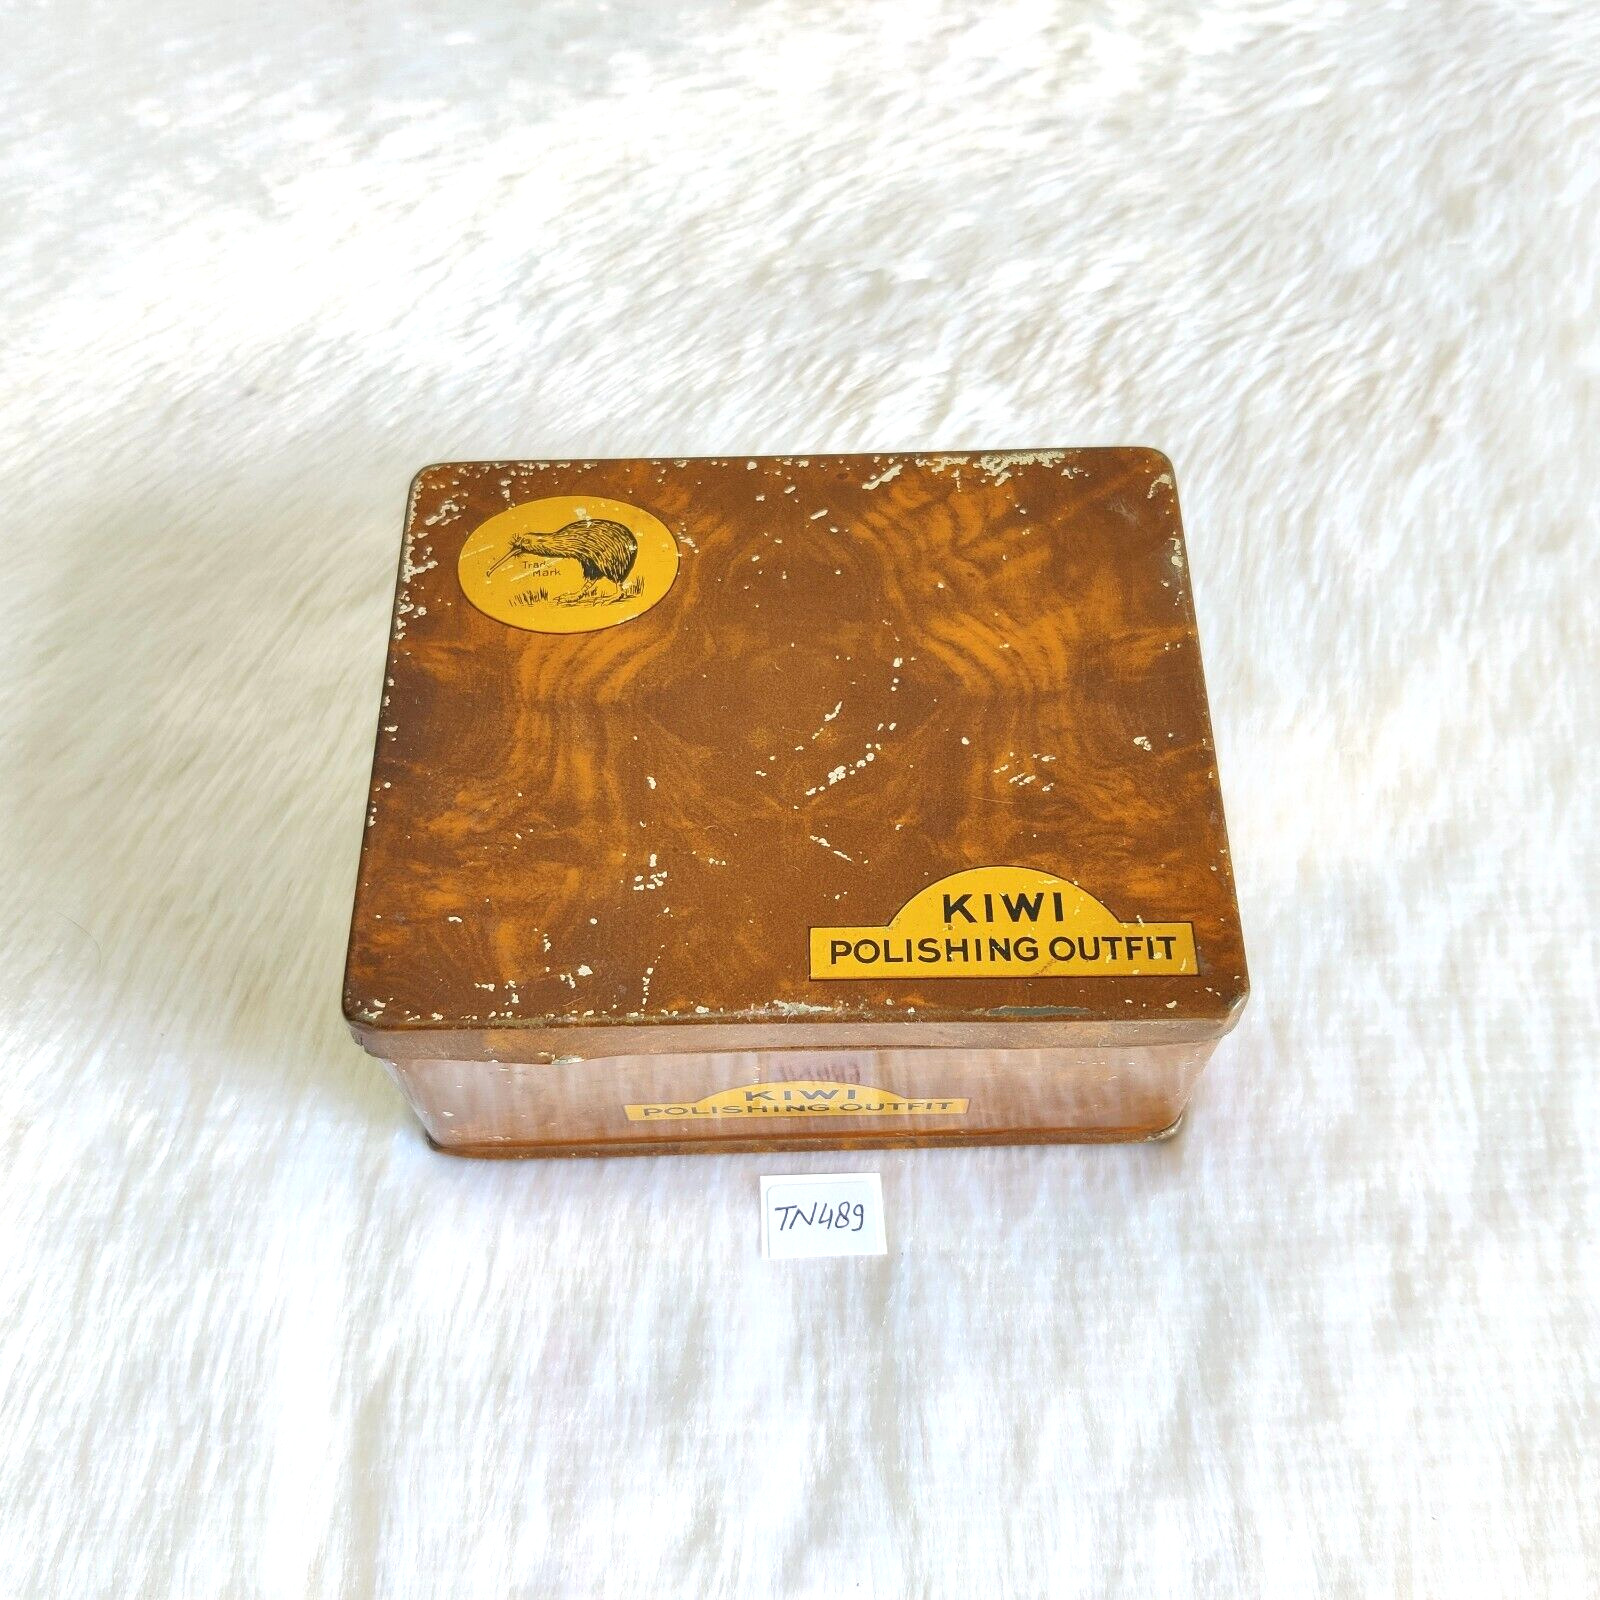 Vintage Kiwi Polishing Outfit Advertising Litho Tin Box Rare Collectible TN489